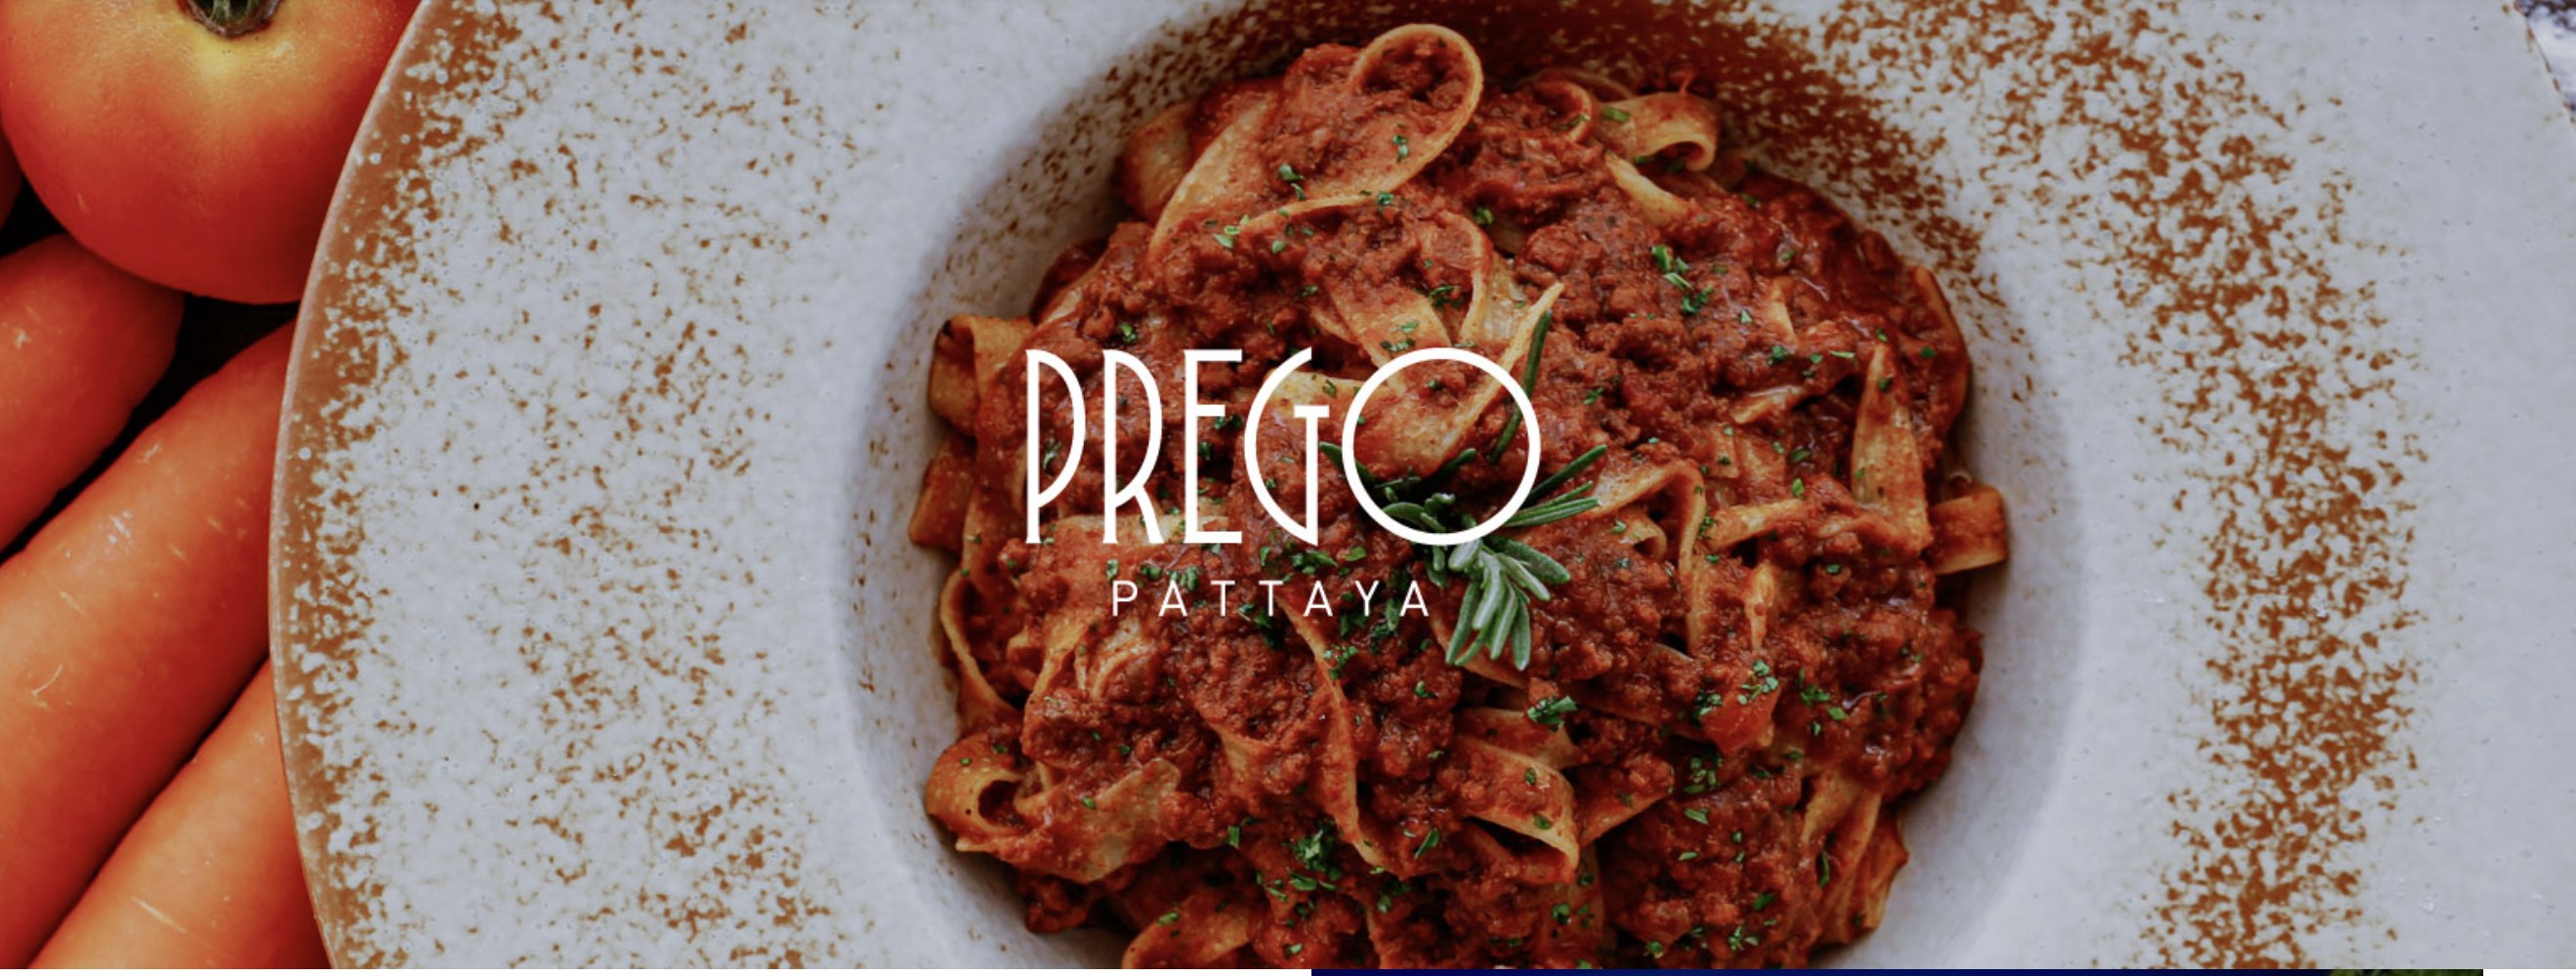 芭堤雅阿瑪瑞度假酒店Prego Italian餐廳現金券